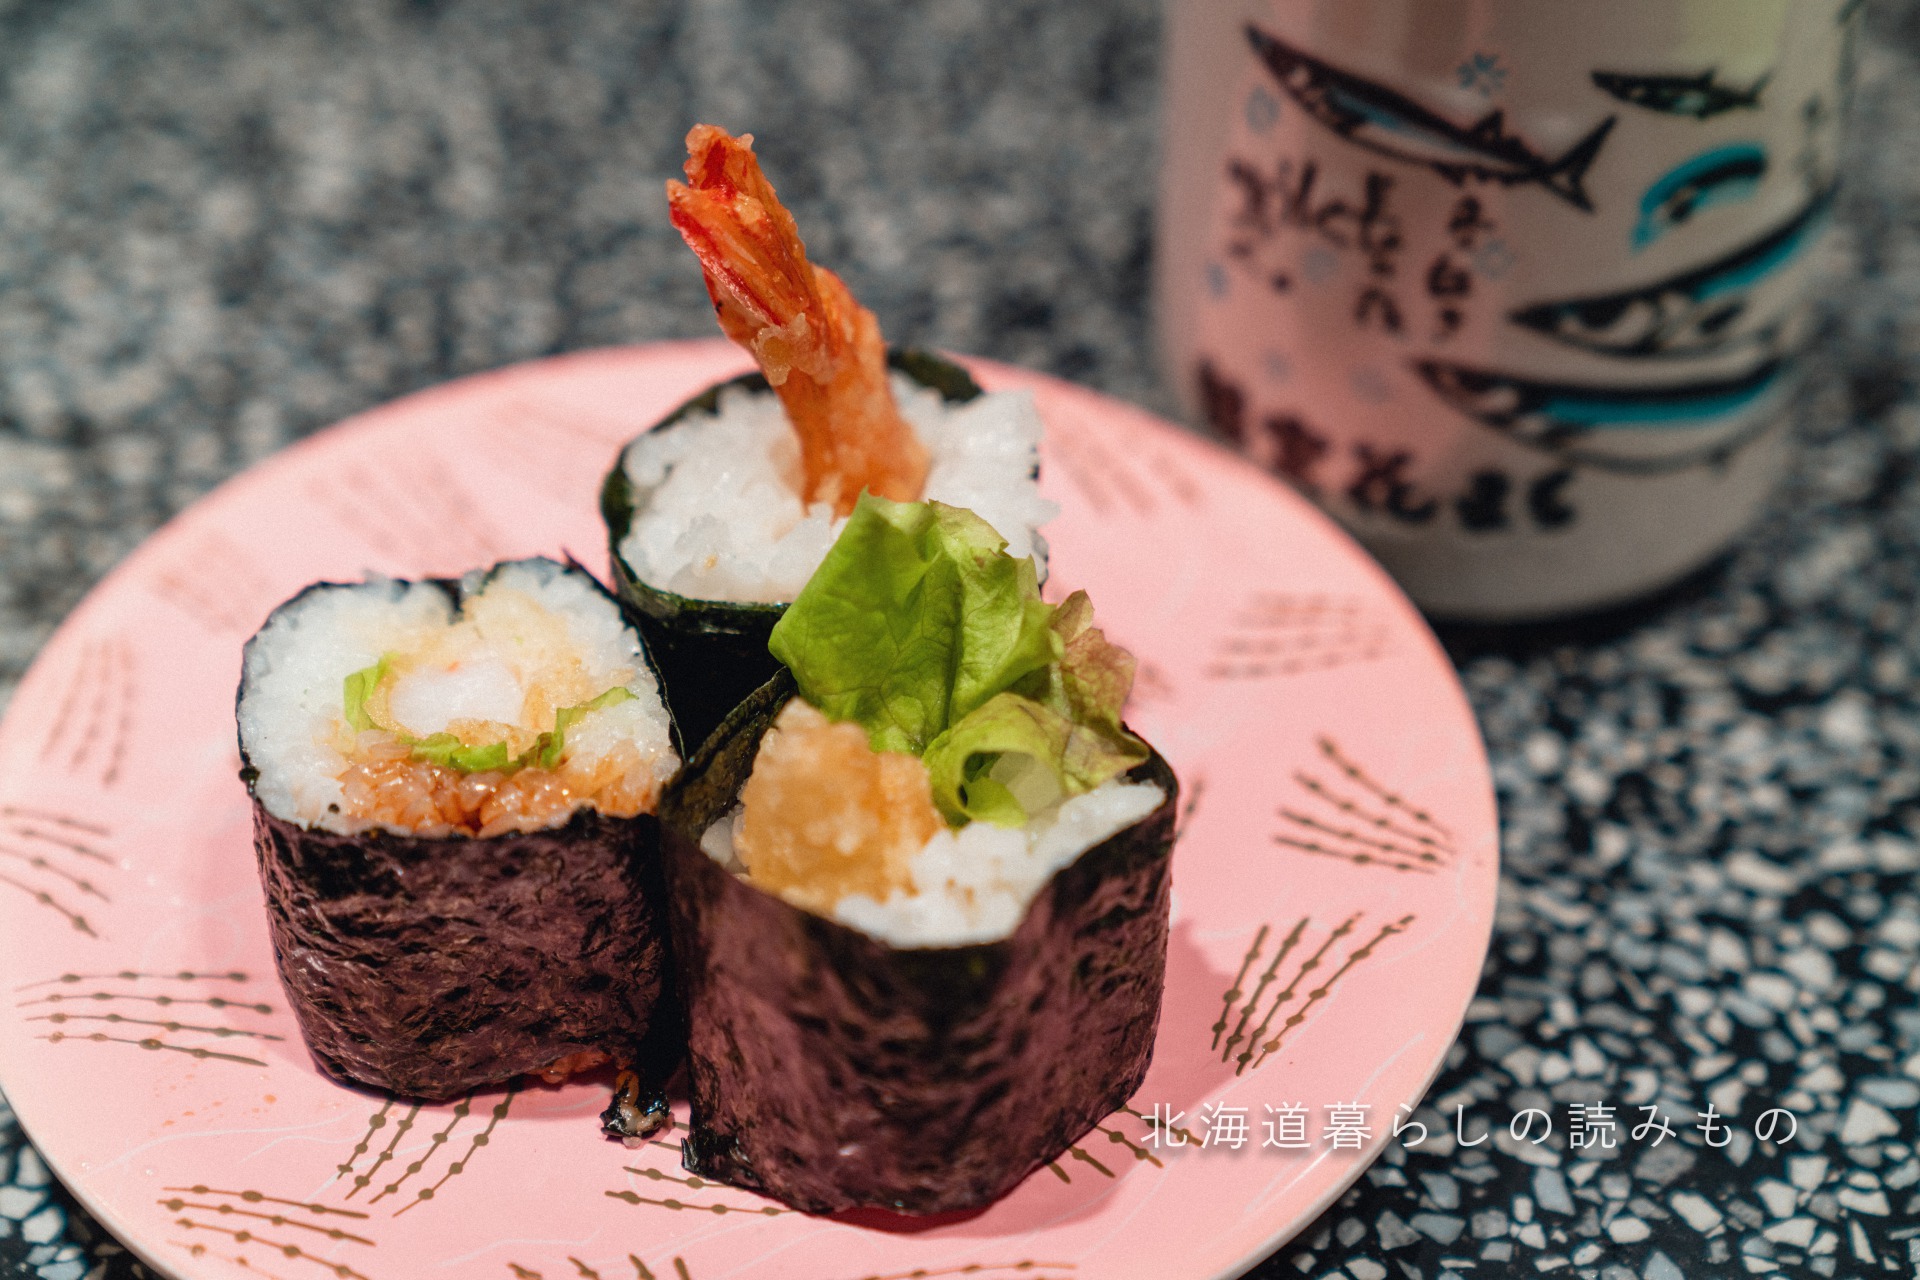 迴轉壽司根室花丸的菜單上的「大蝦天婦羅巻壽司」